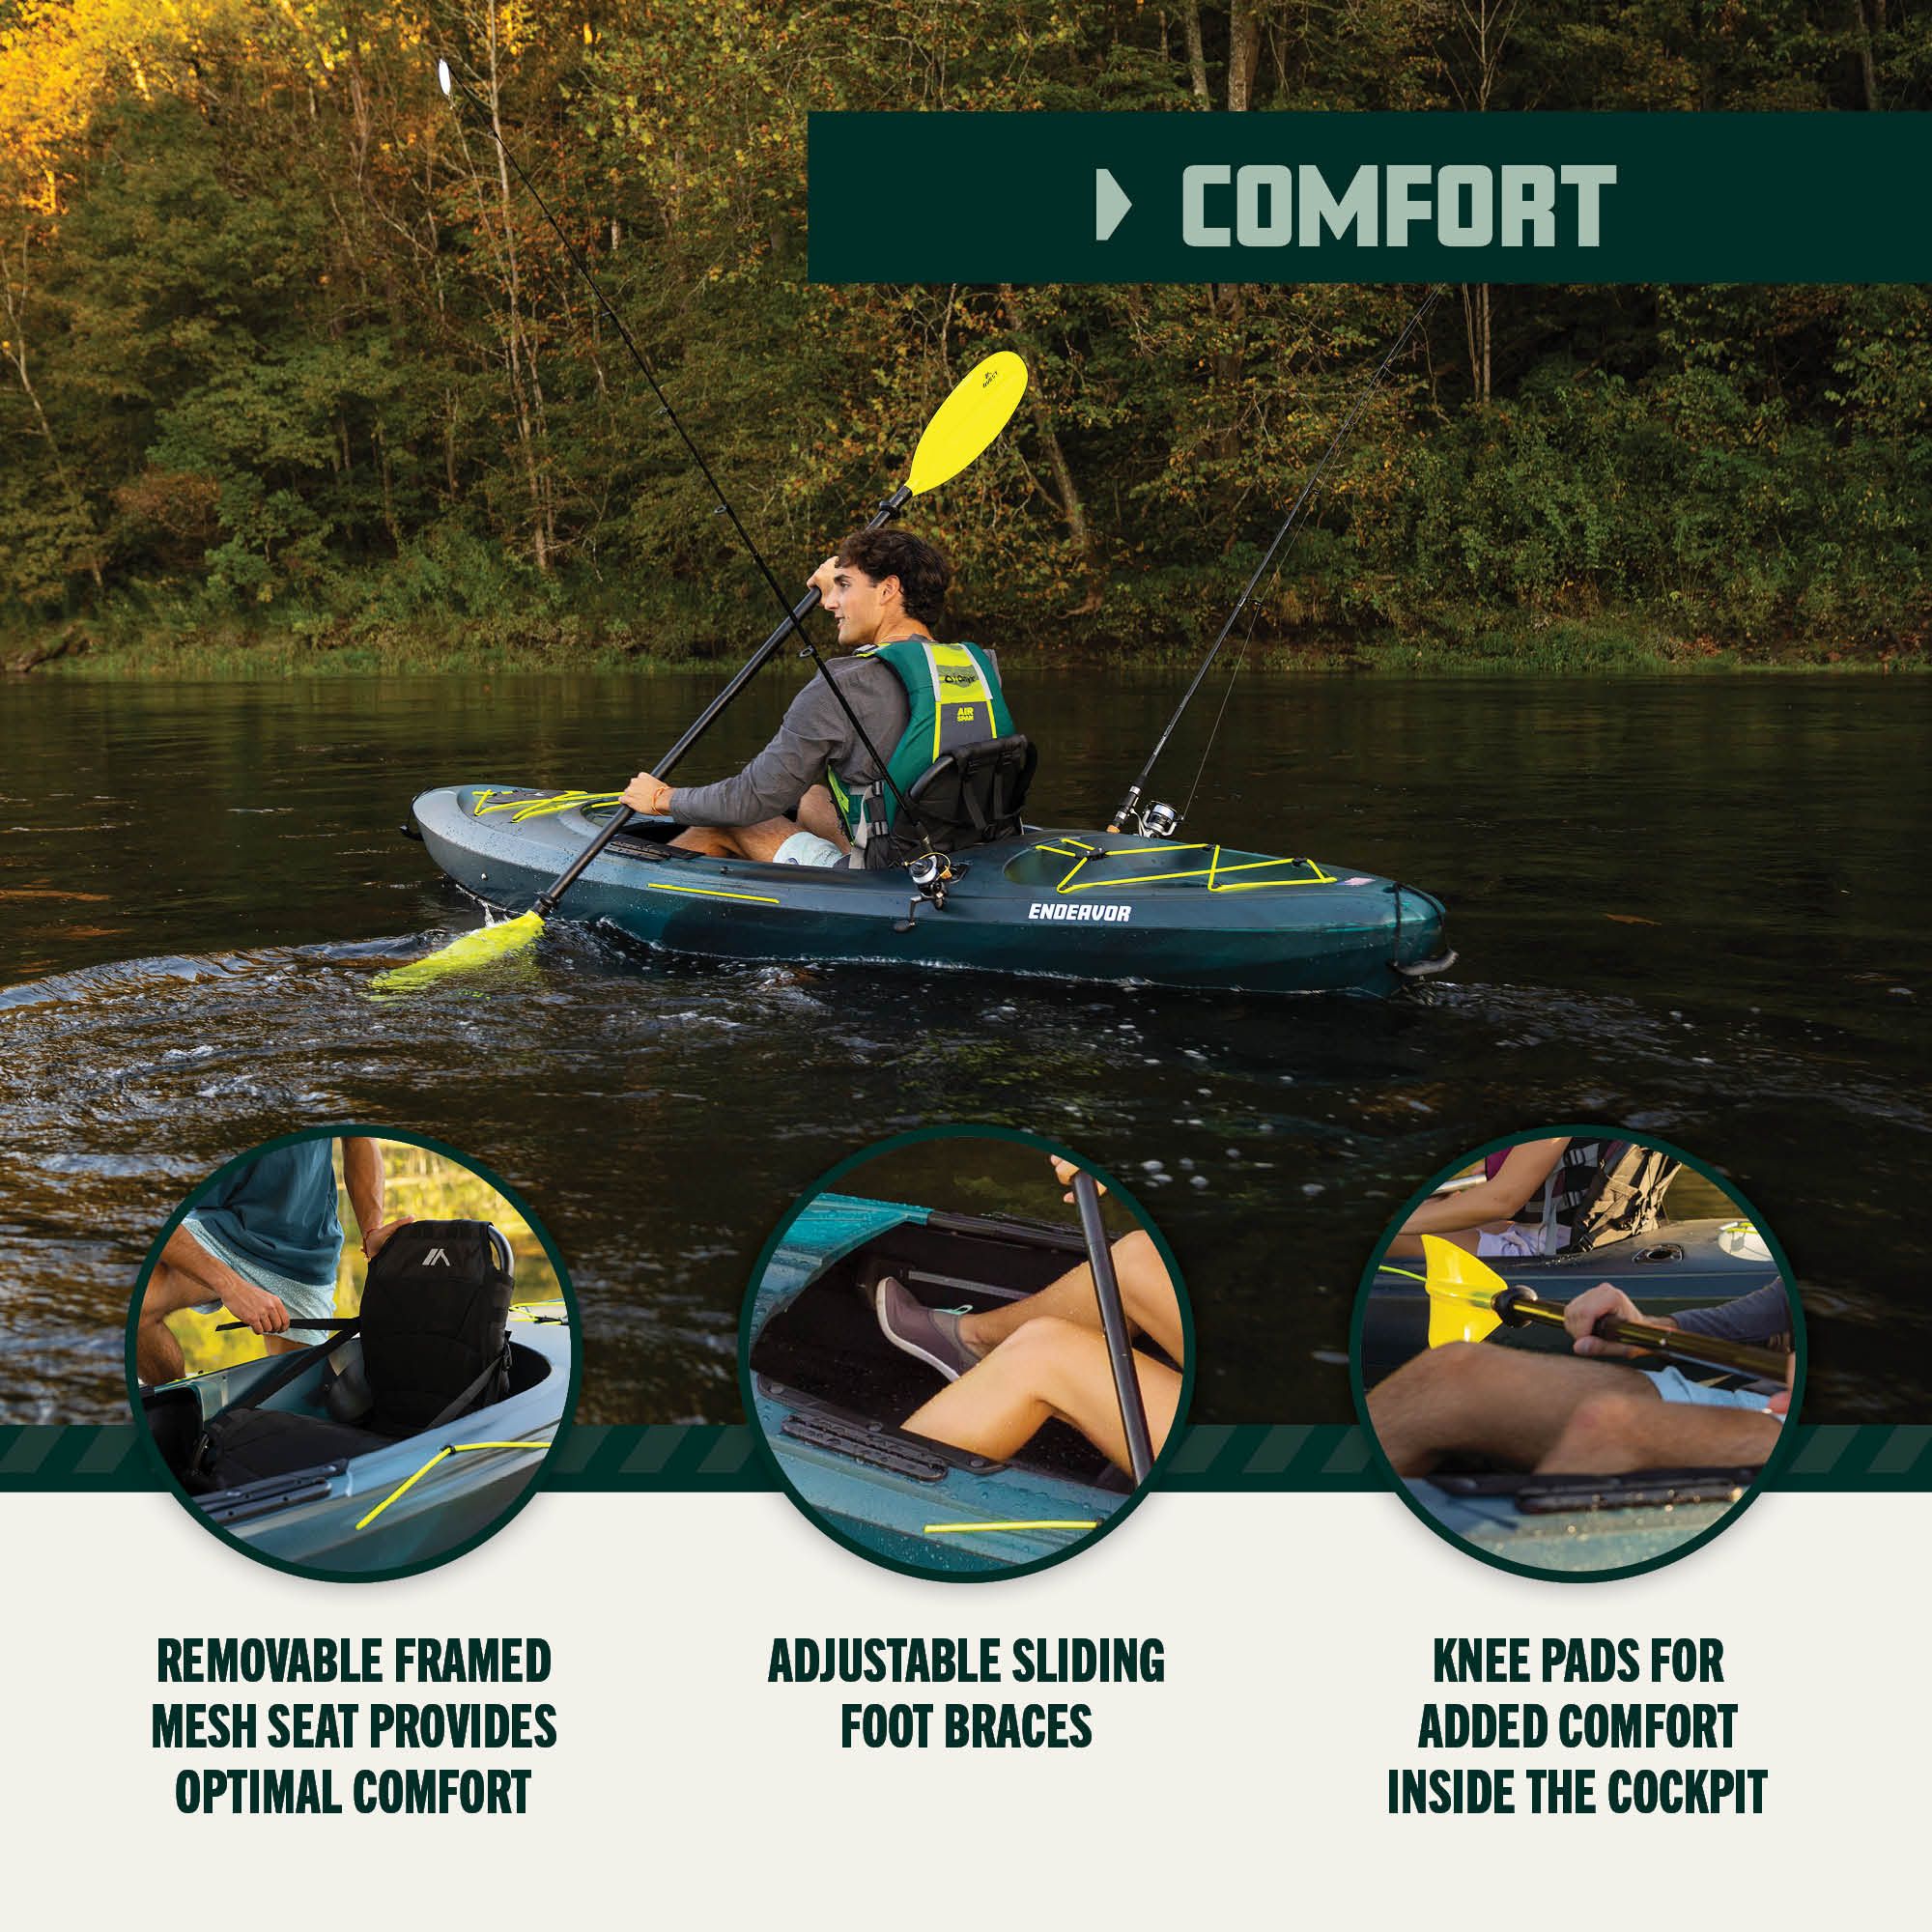 Dick's Sporting Goods Quest Endeavor 100 Kayak